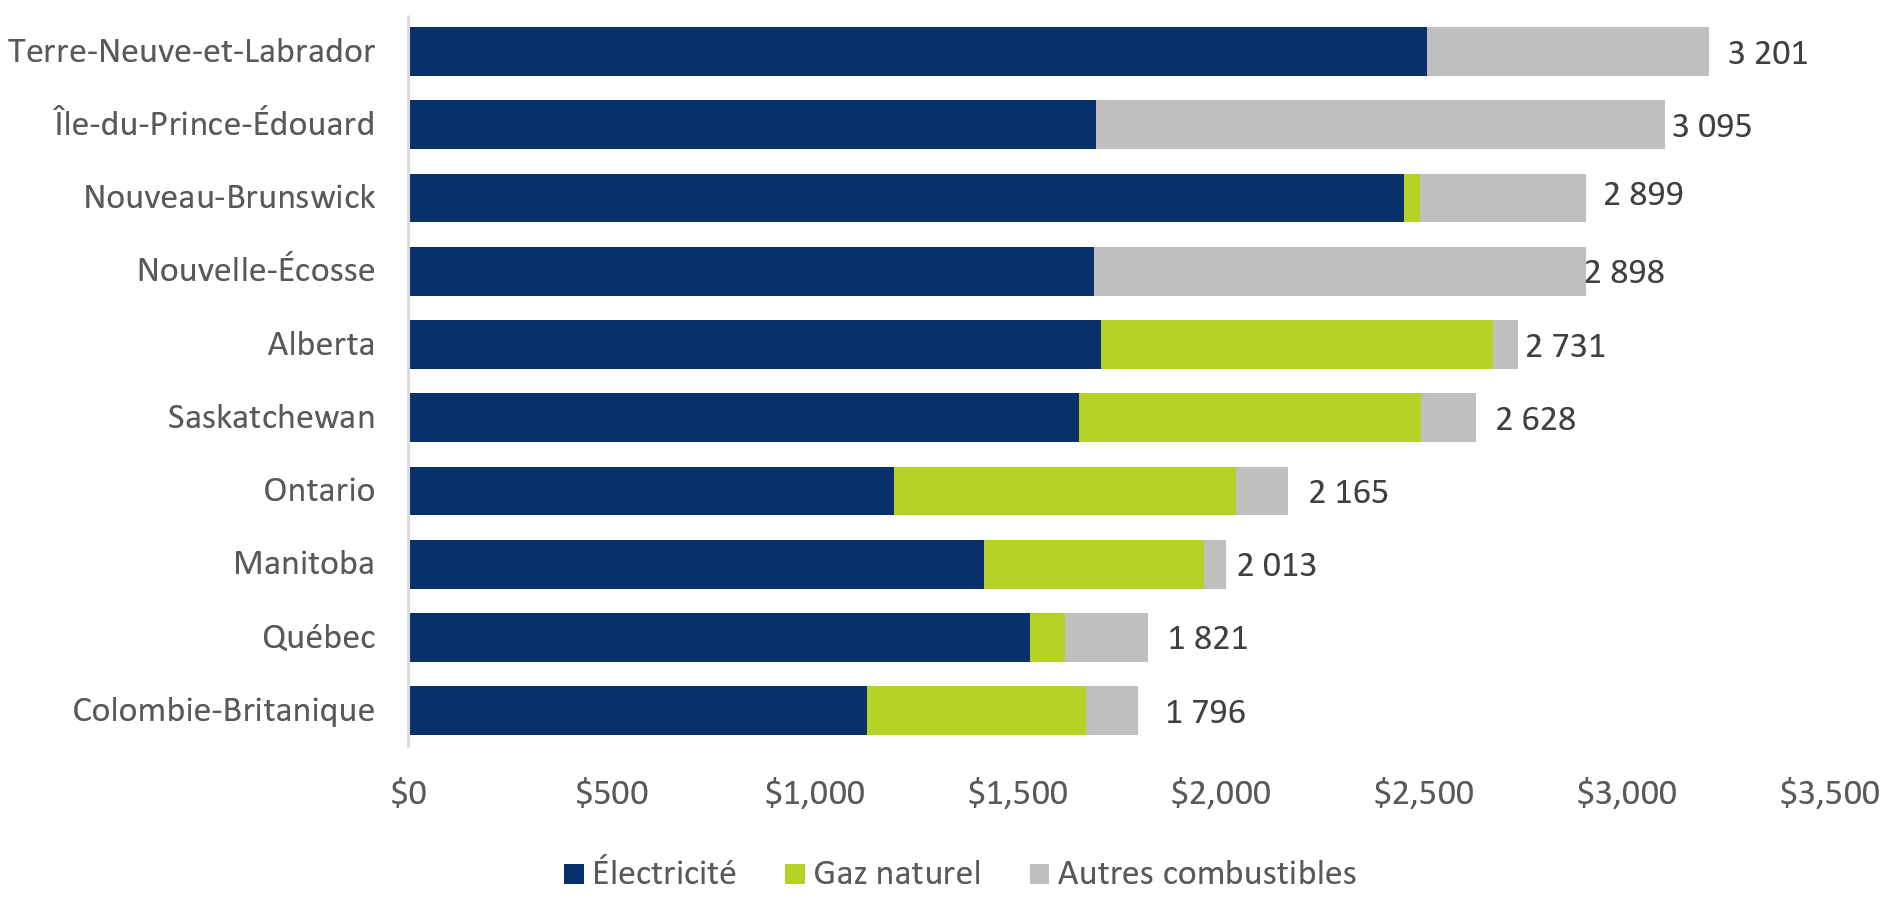 Dépenses moyennes en énergie domestique des ménages, par province, 2019 ($)